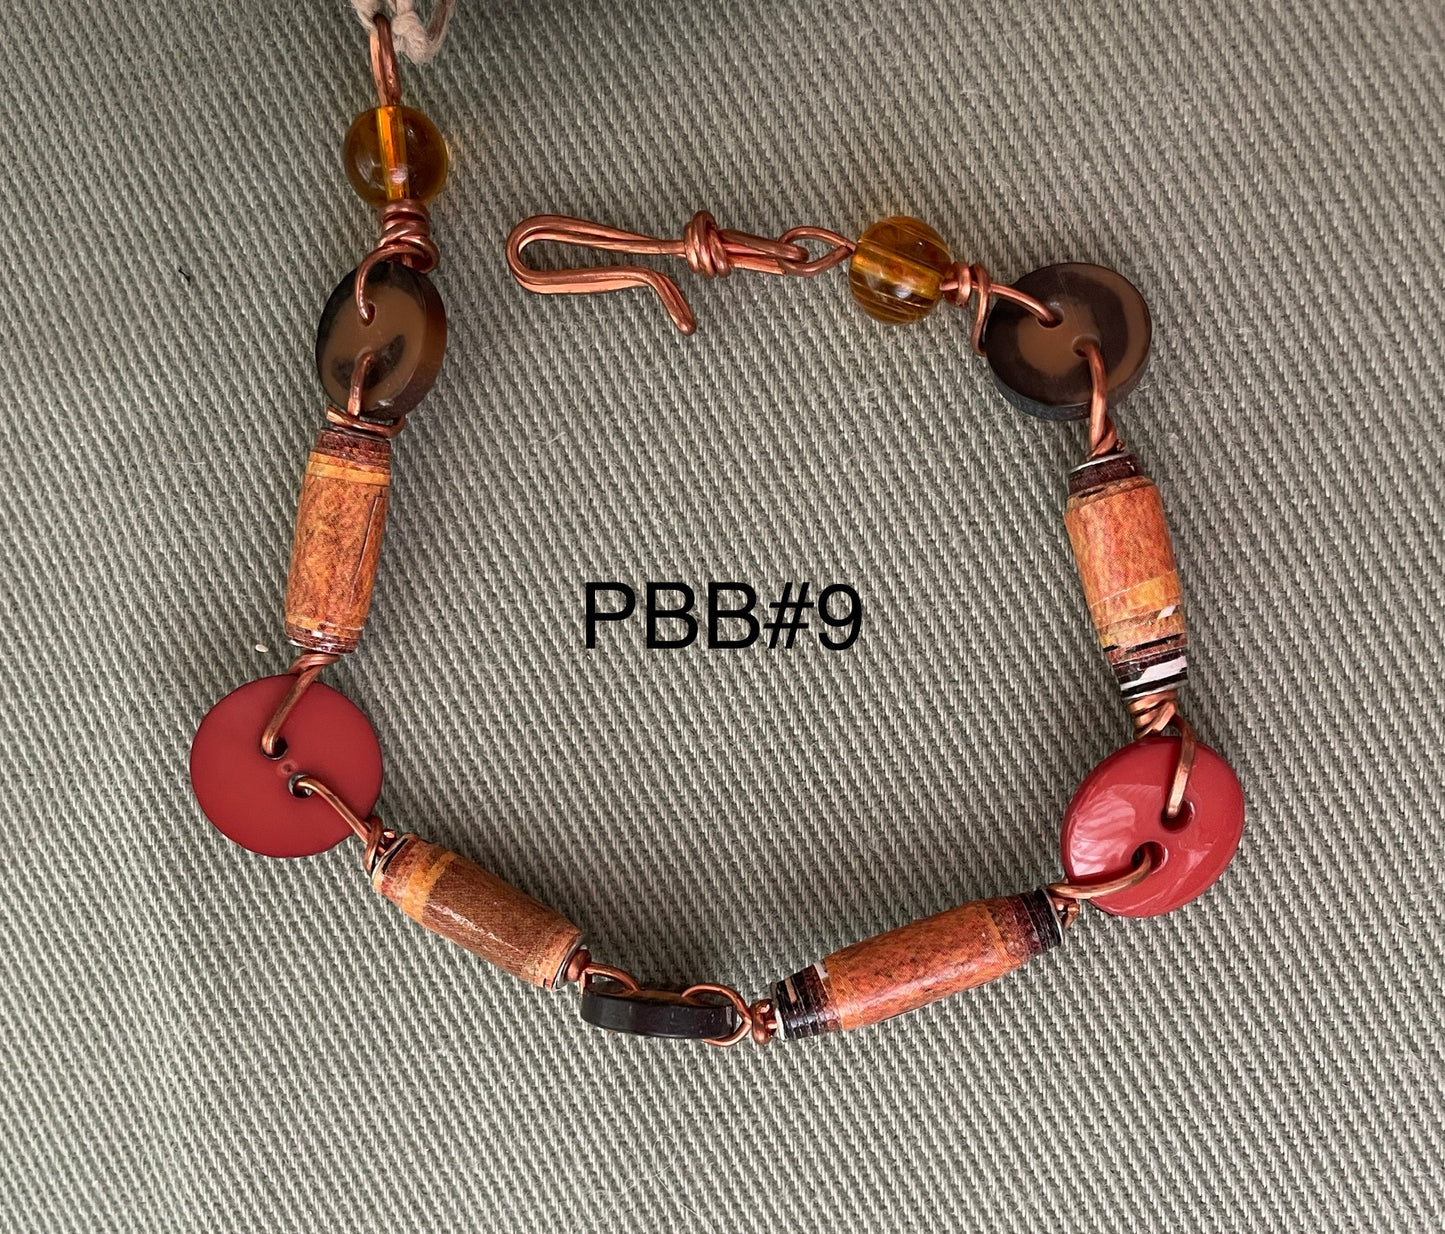 Button & Paper Bead Bracelet PBB9